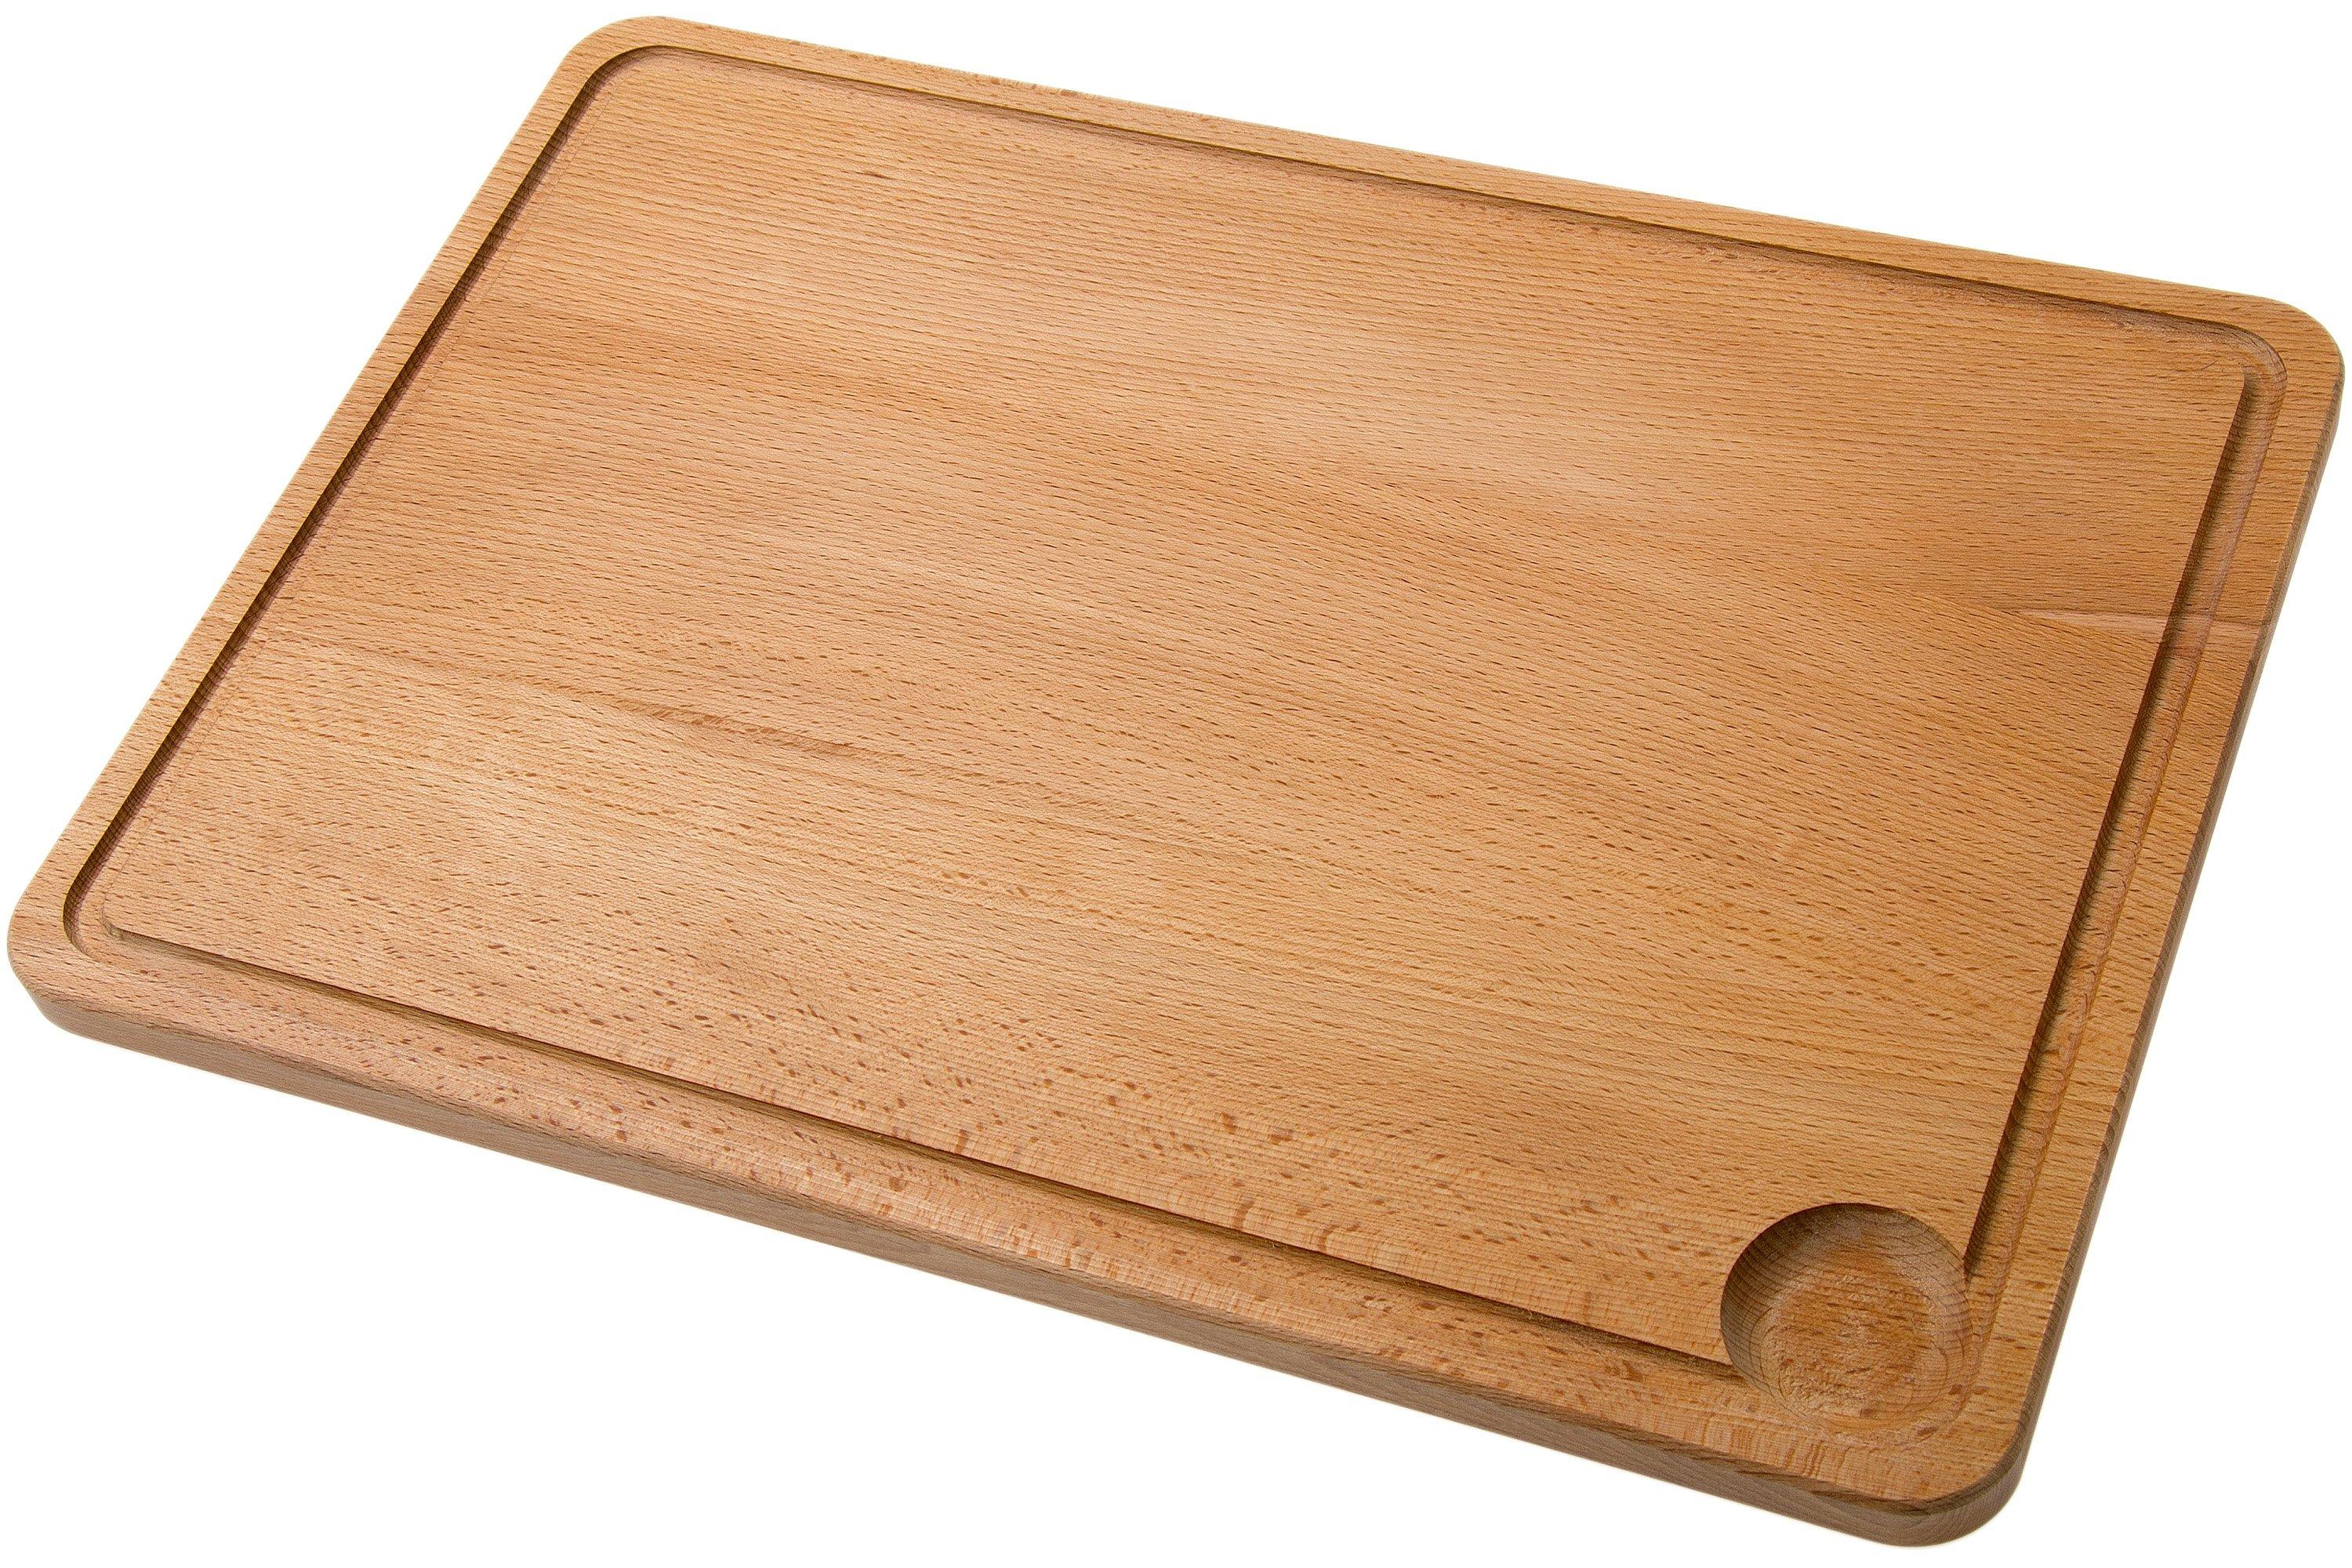 efo - Tagliere per pizza, in legno di faggio, con scanalature per fette Tagliere  per pizza. 35 [cm]